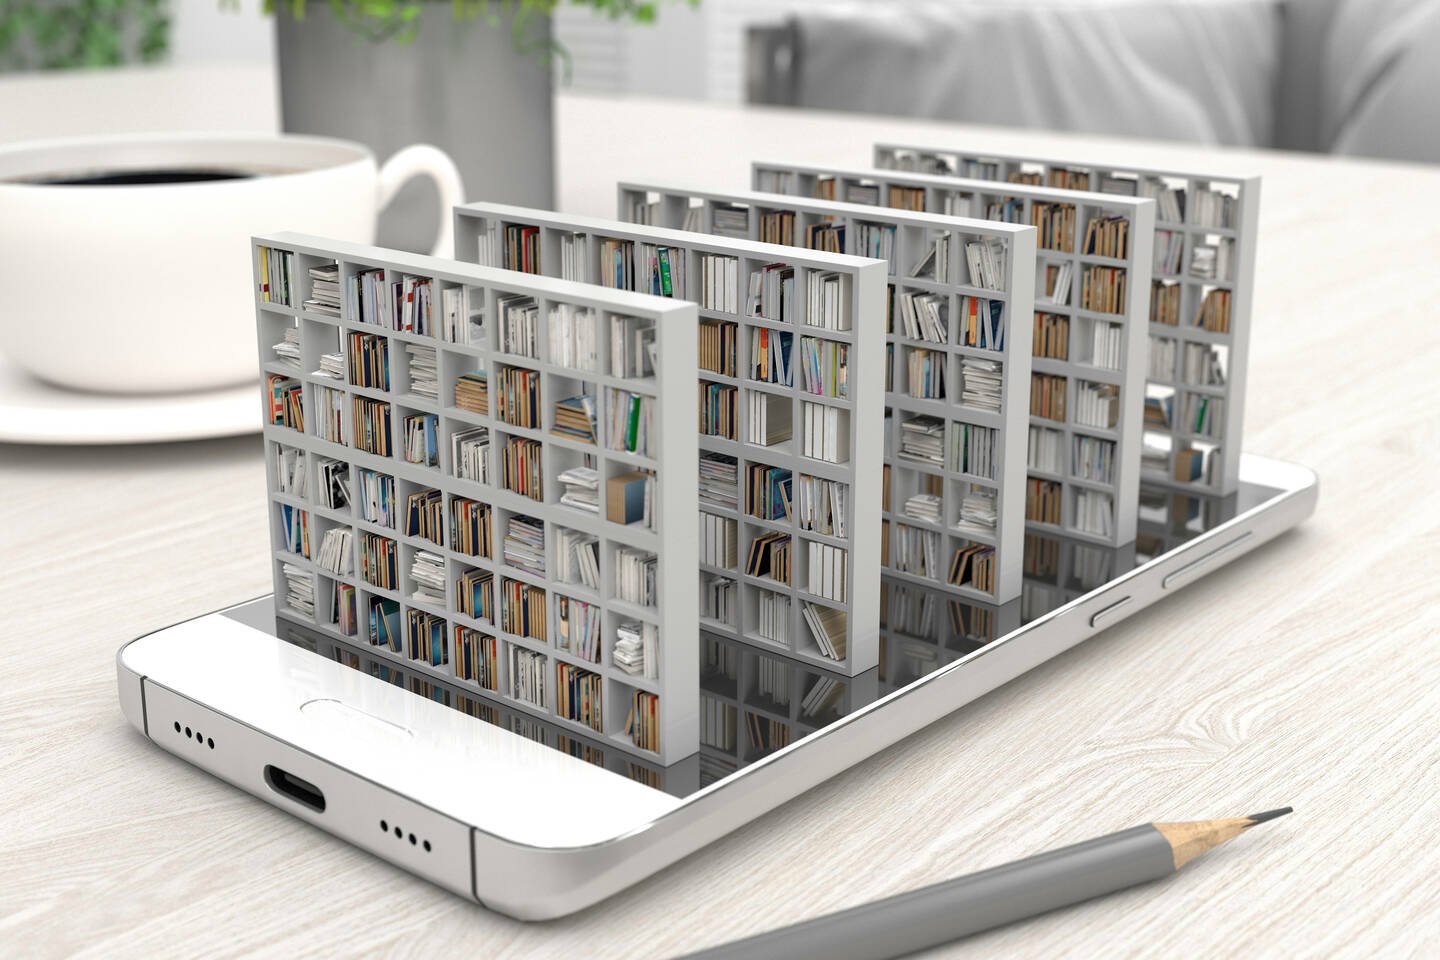 Elektronische Bibliothek ragt aus Smartphone heraus